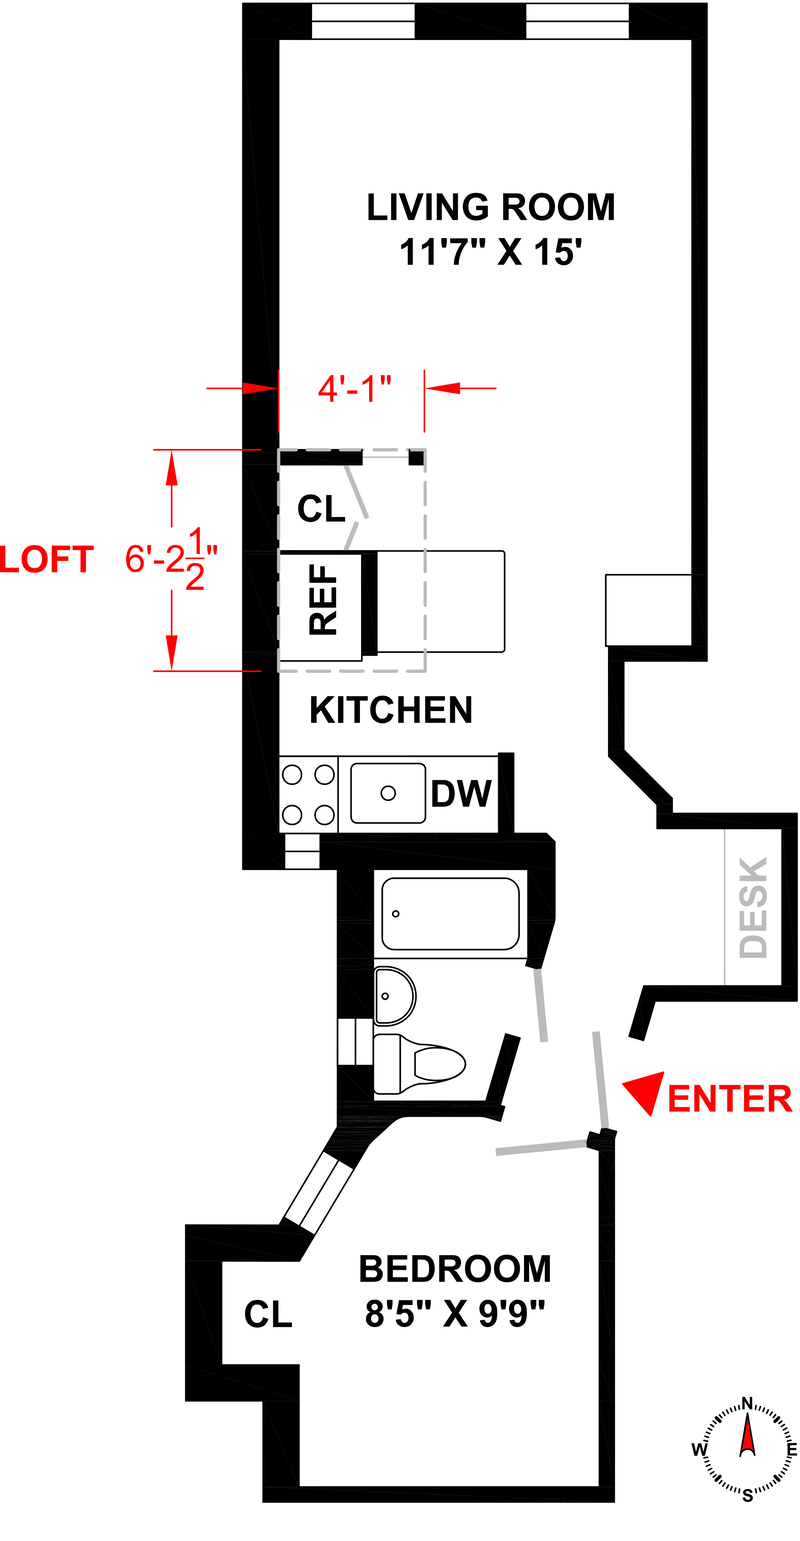 Floorplan for 415 East 80th Street, 2E